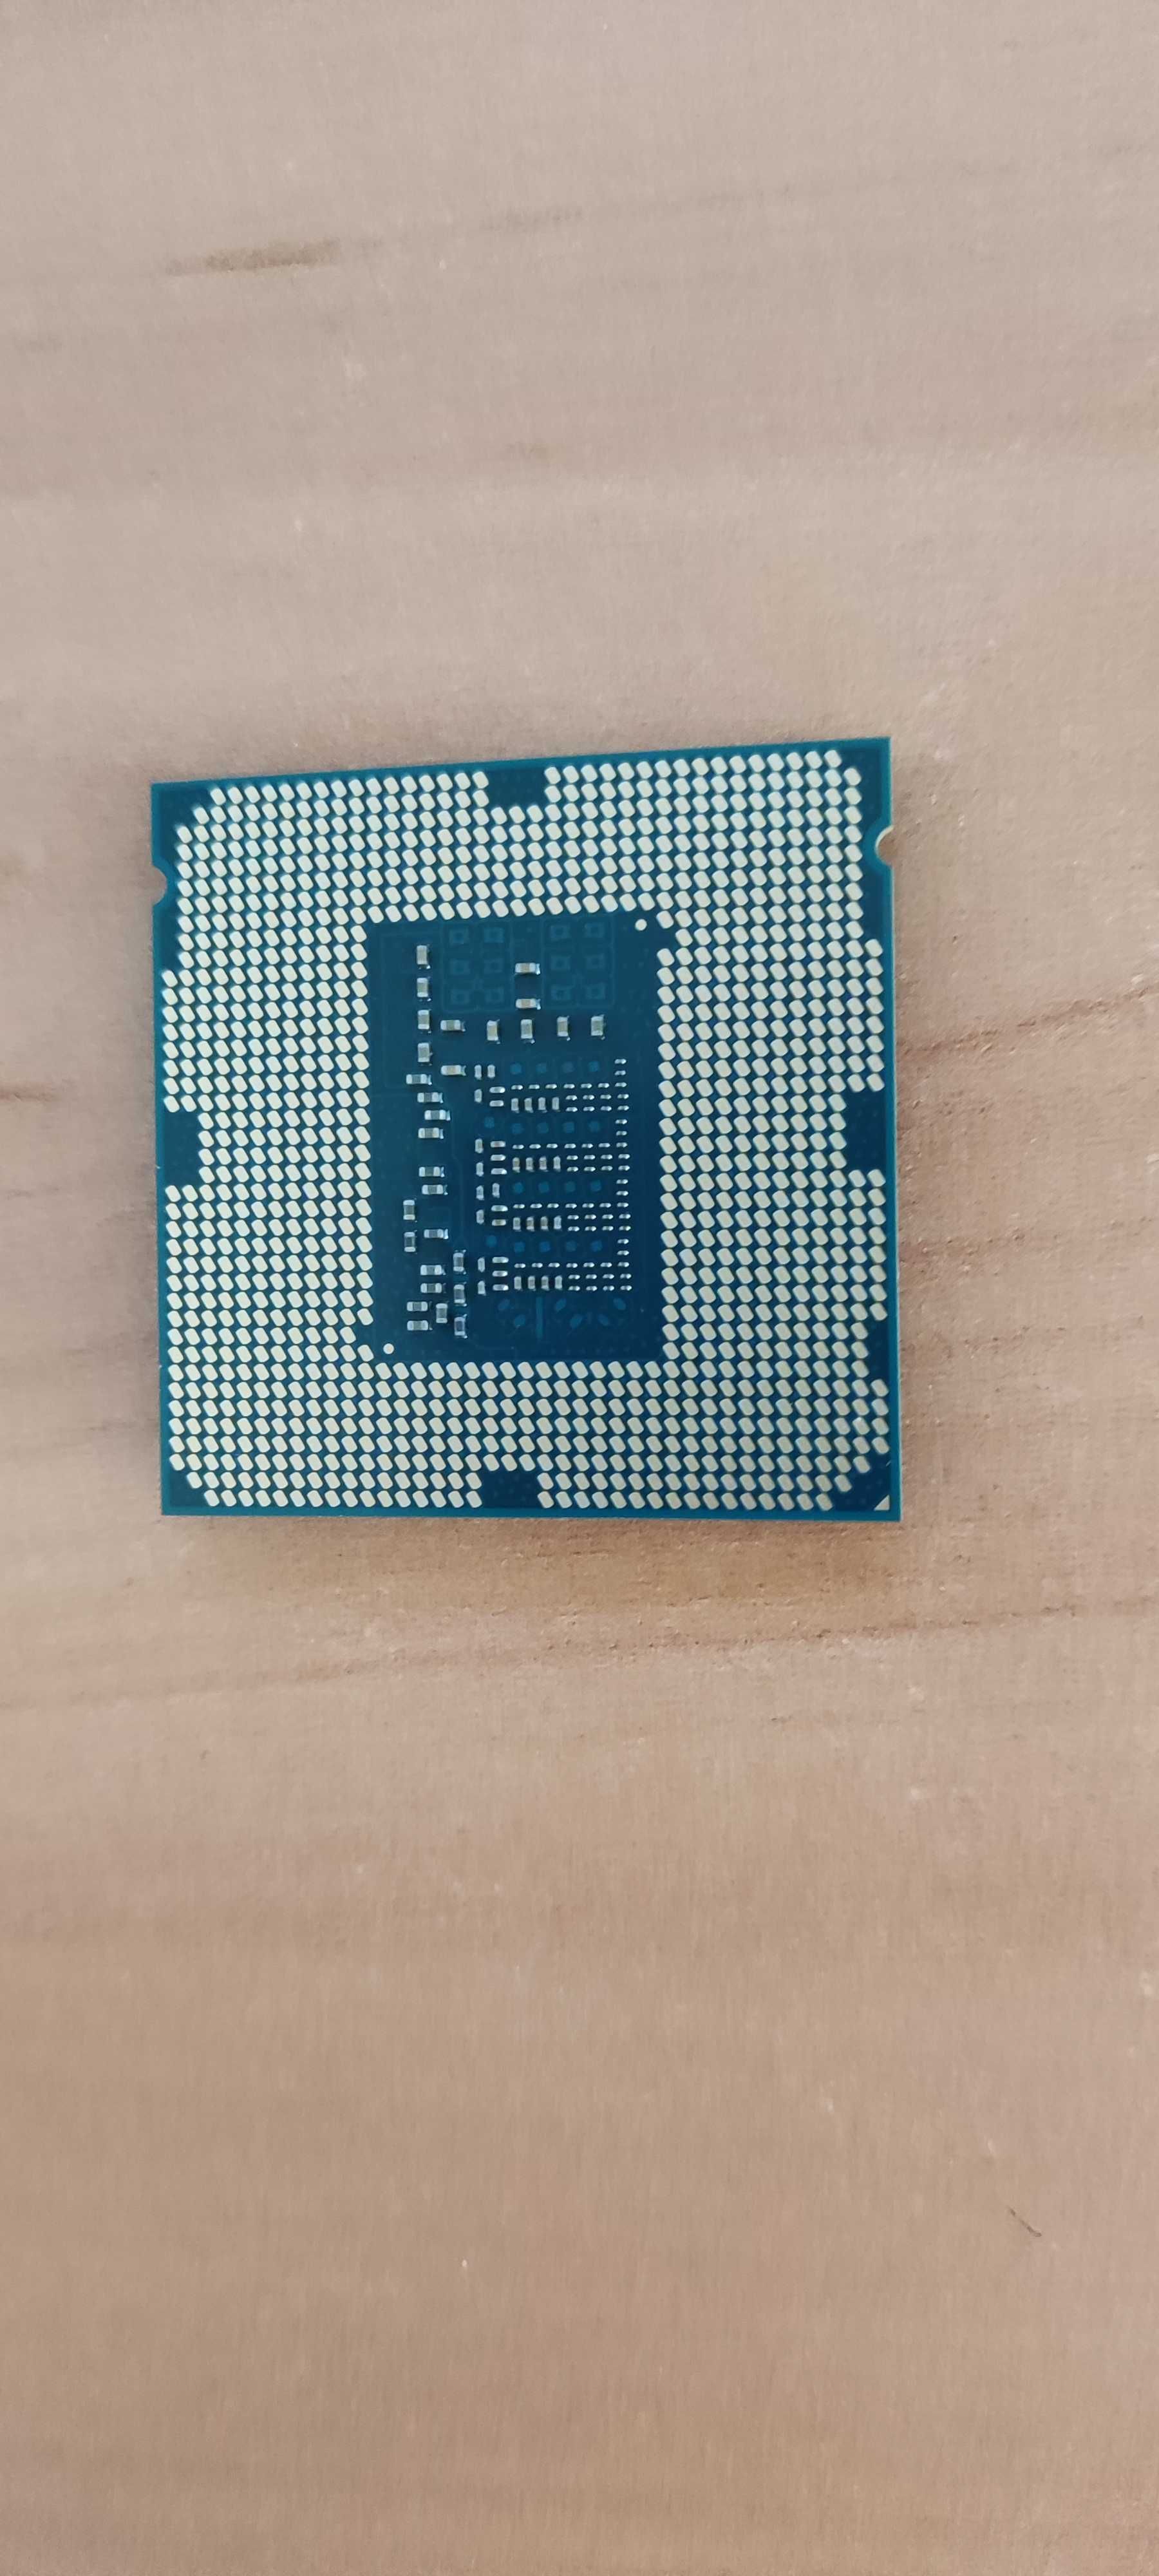 Procesor intel Core i5 4430 LGA 1150 + Chłodzenie